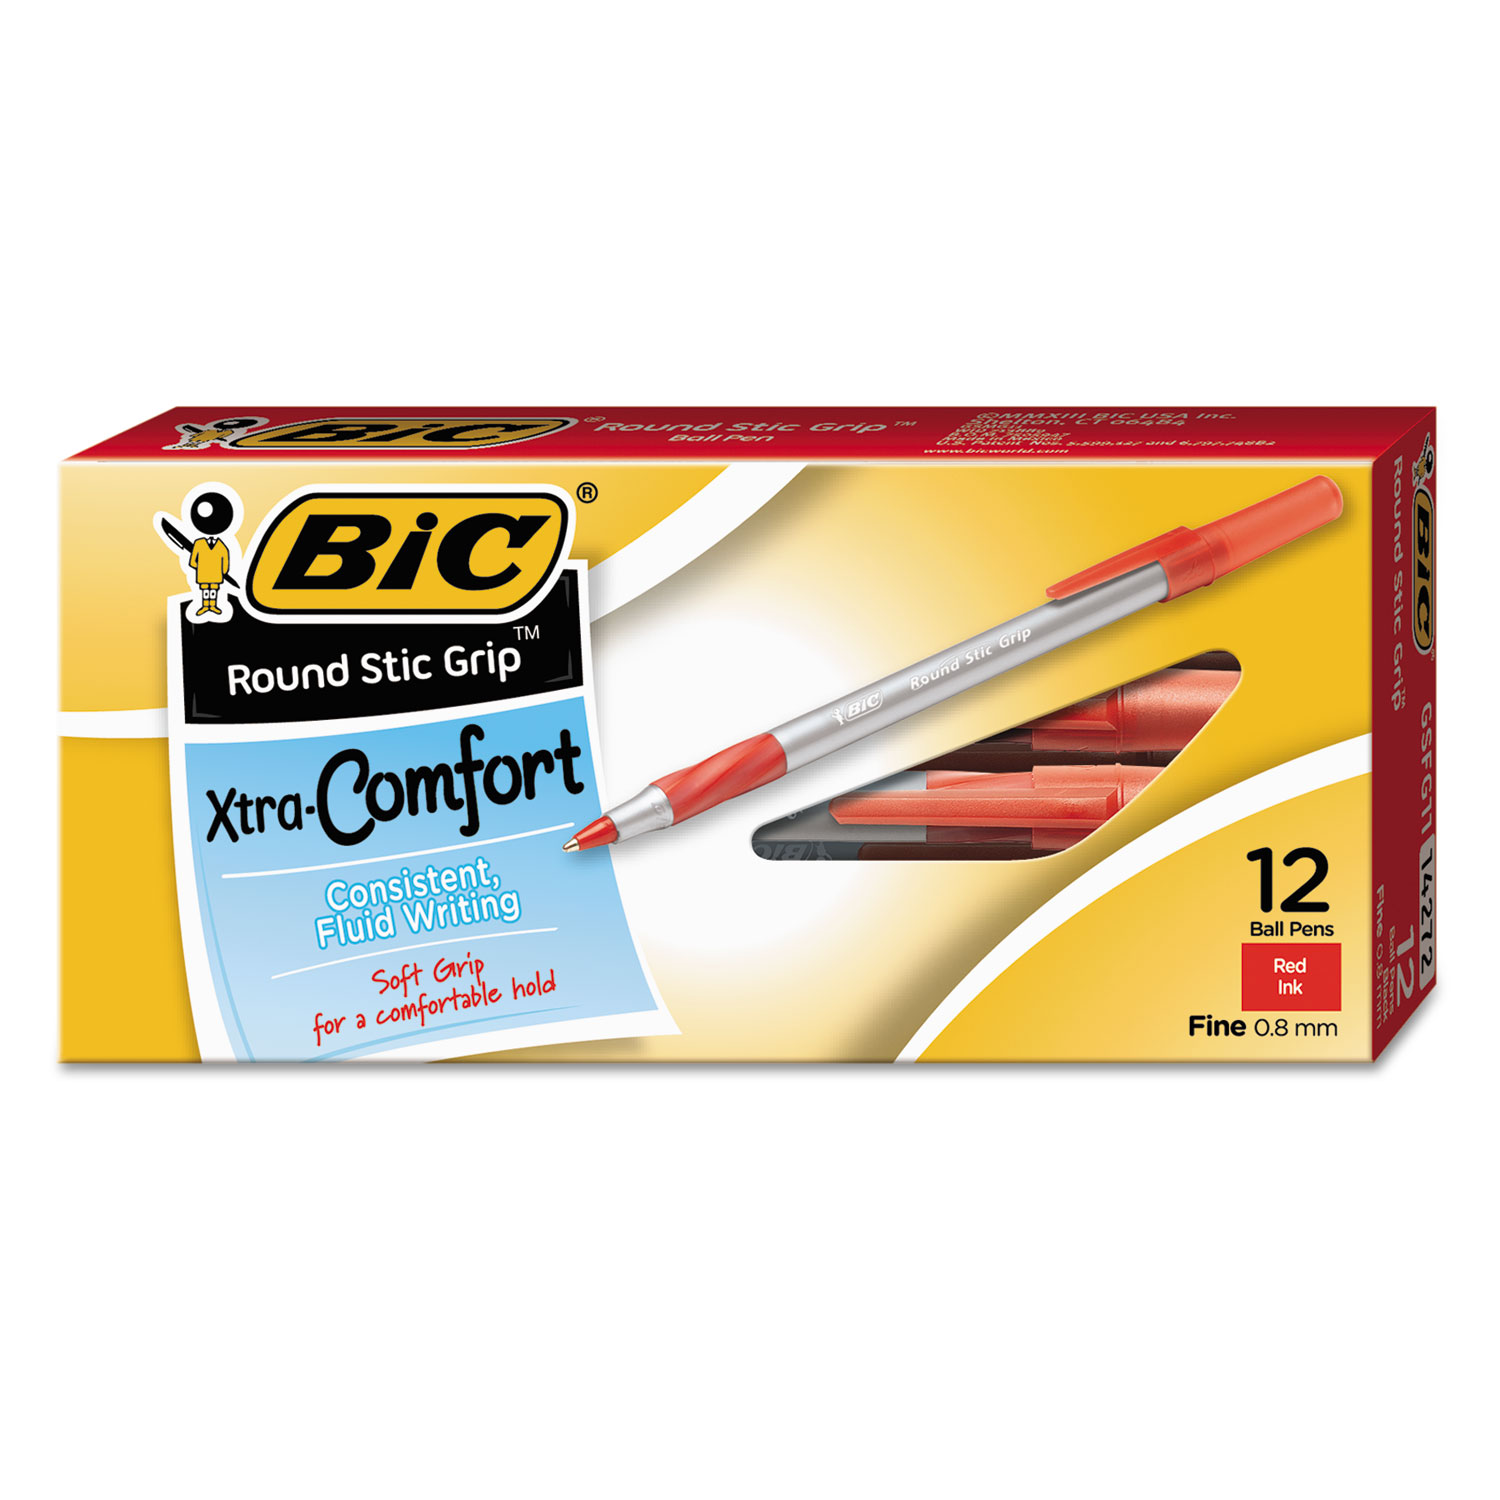 Round Stic Grip Xtra Comfort Ballpoint Pen, Red Ink, .8mm, Fine, Dozen